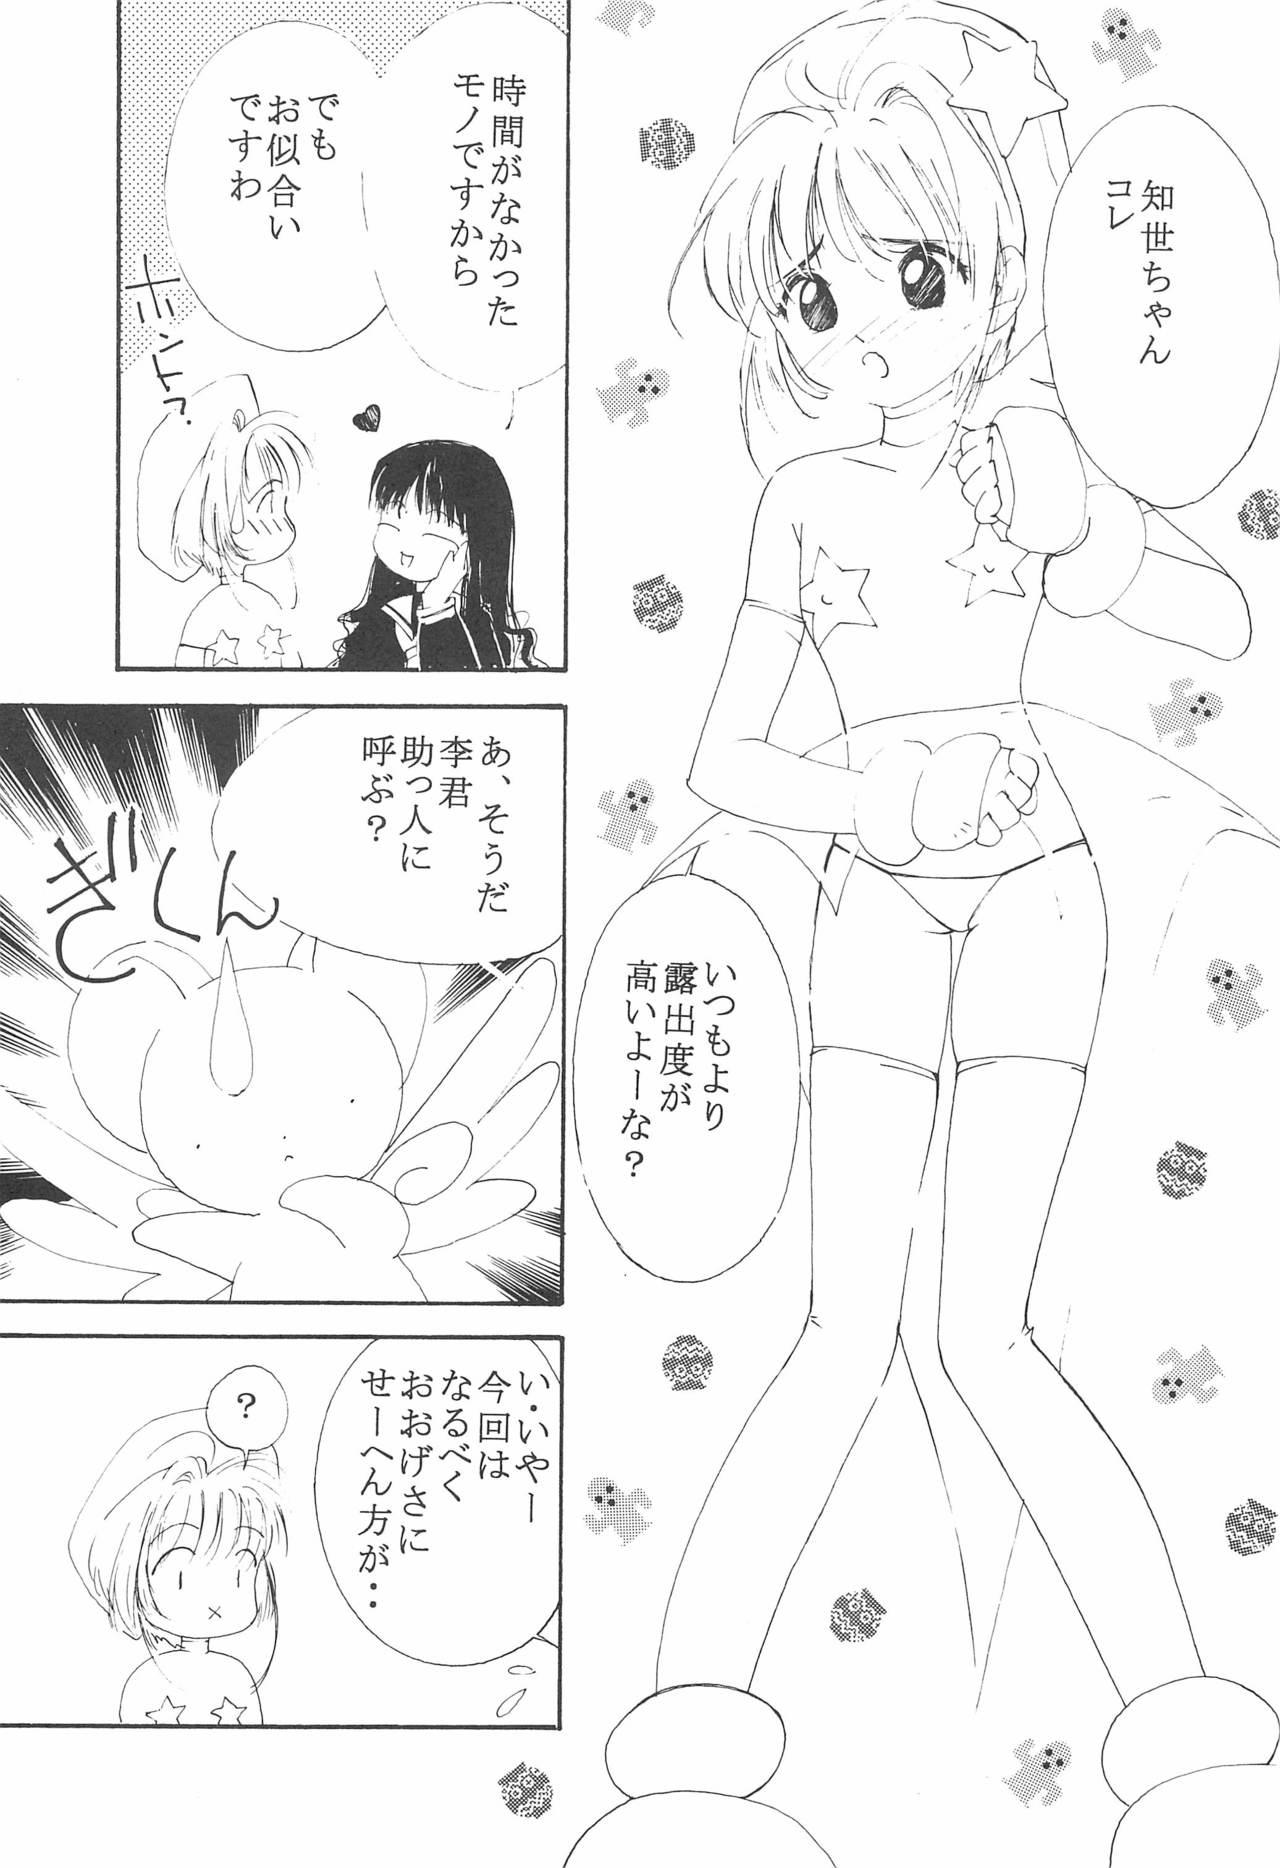 Bigass MoMo no Yu 8 - Cardcaptor sakura Oral Sex - Page 7